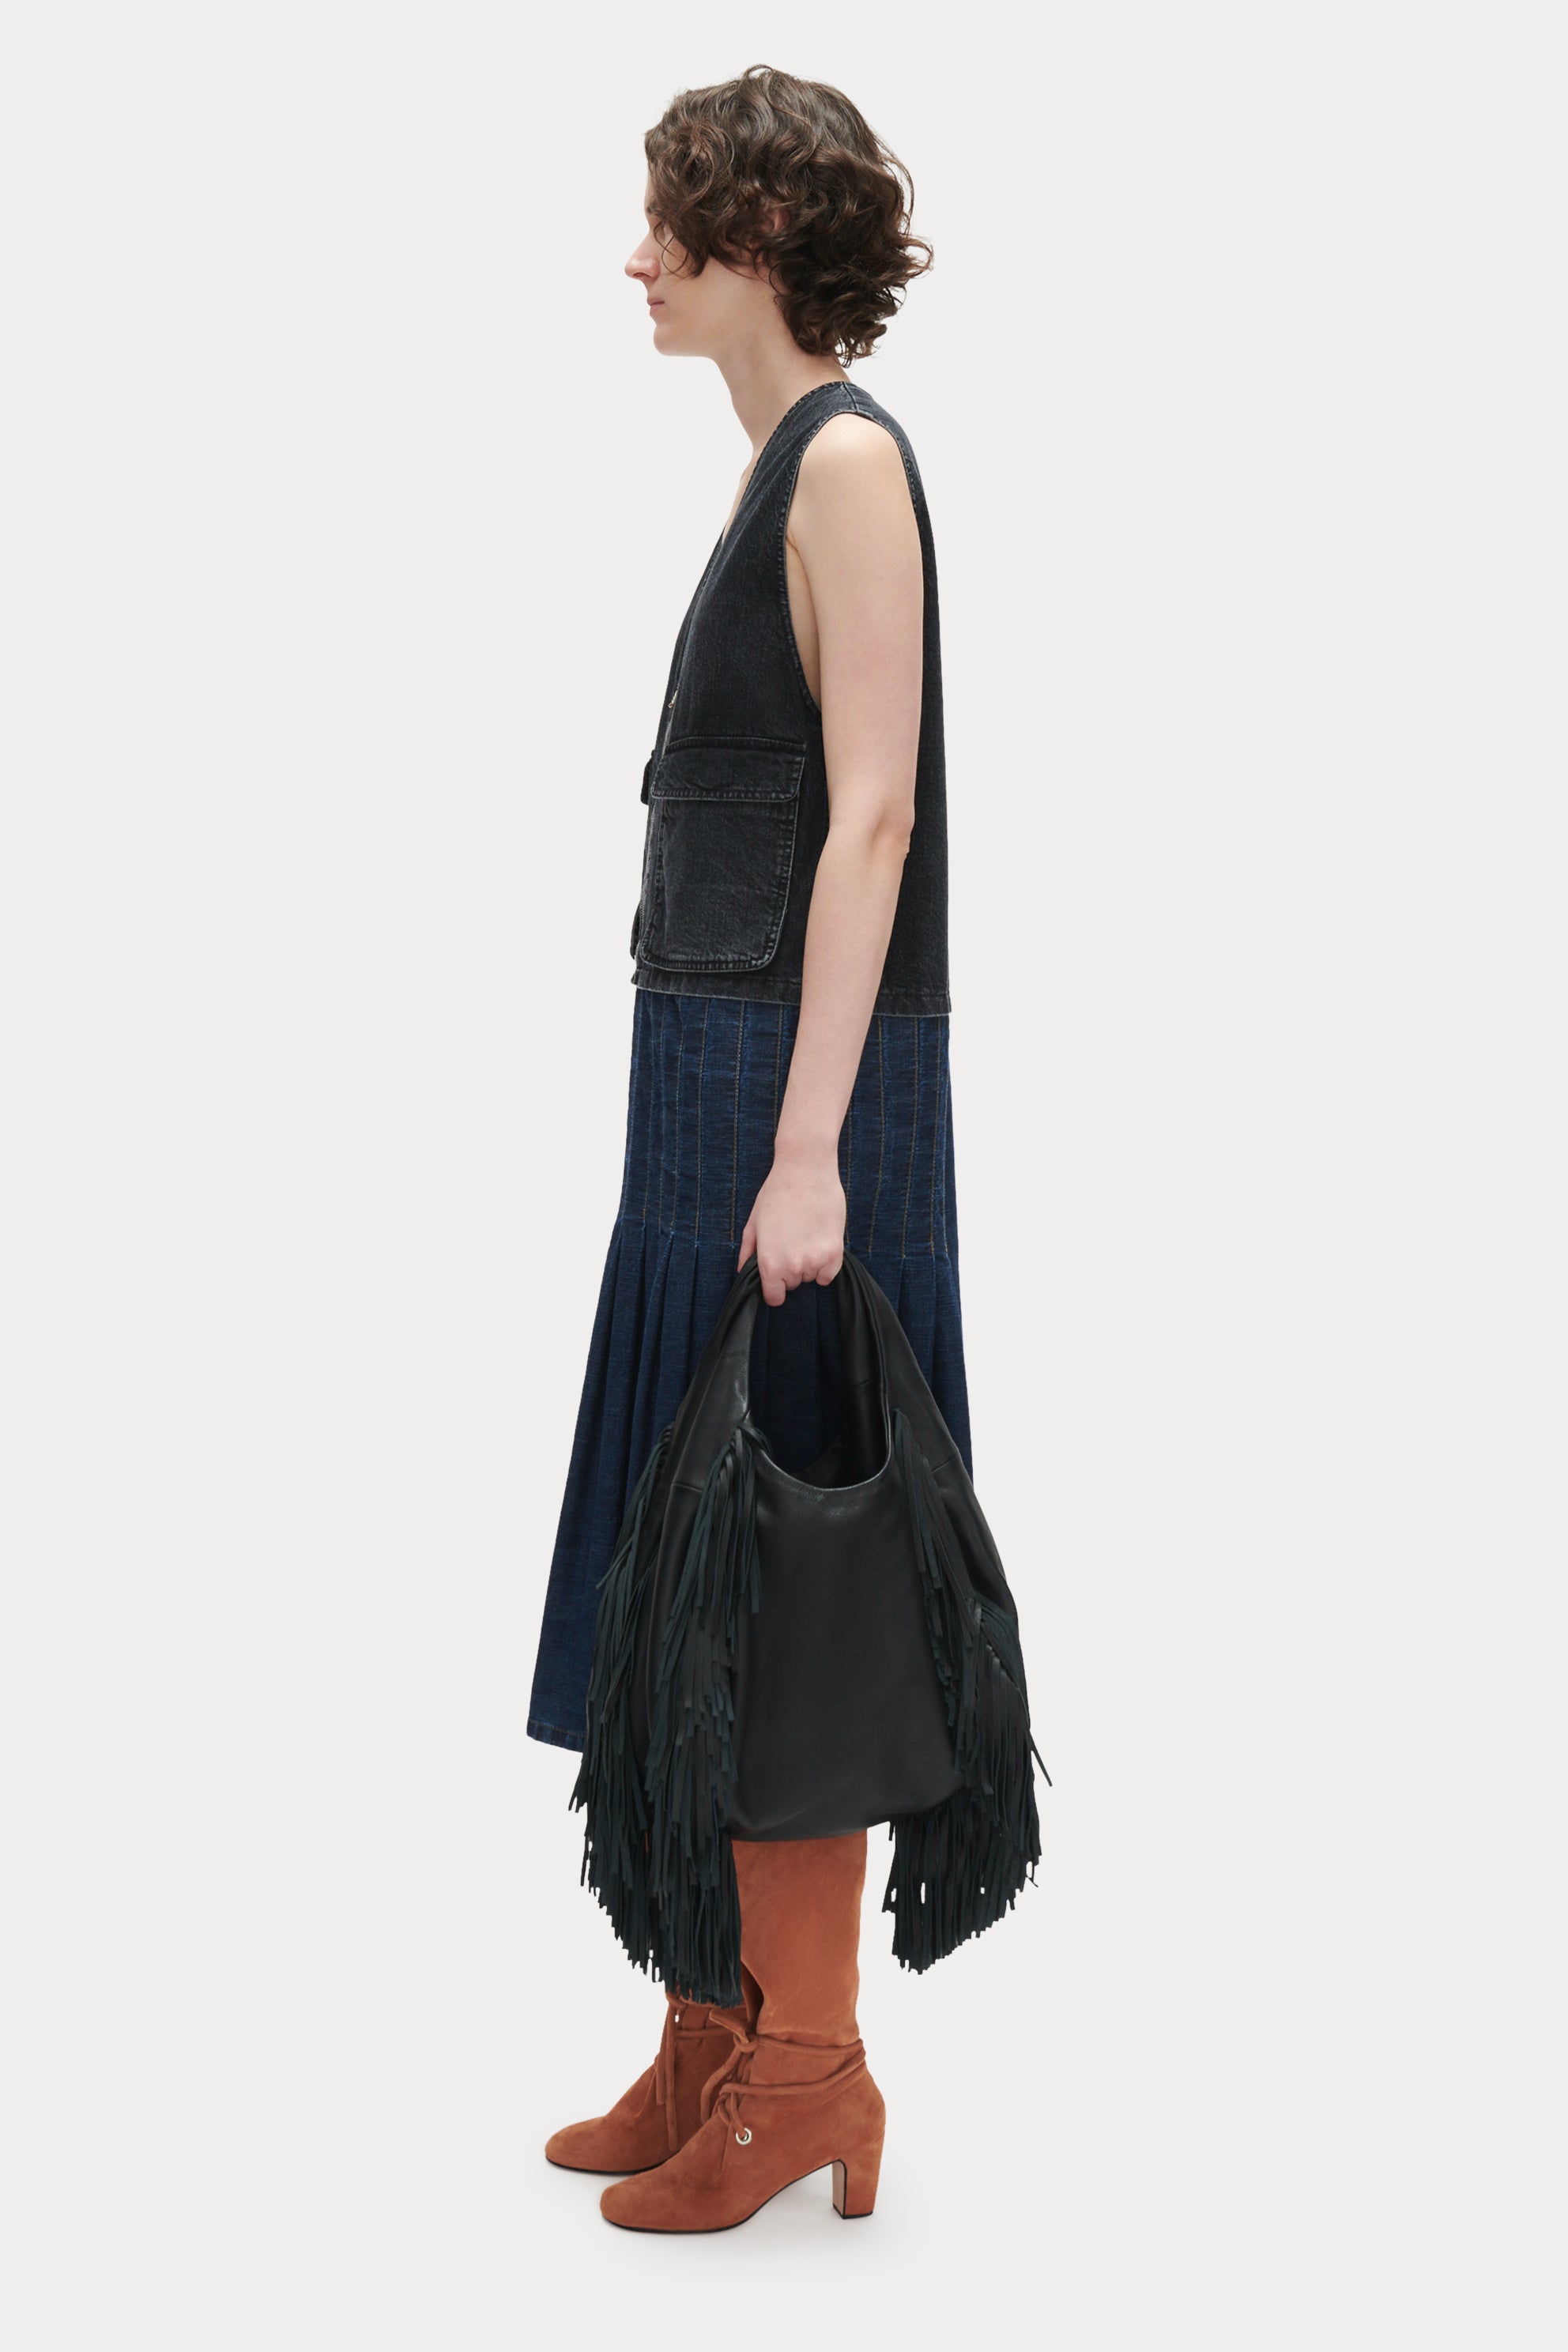 Shila crossbody bag in black suede - Dolce Vita – brenmarke